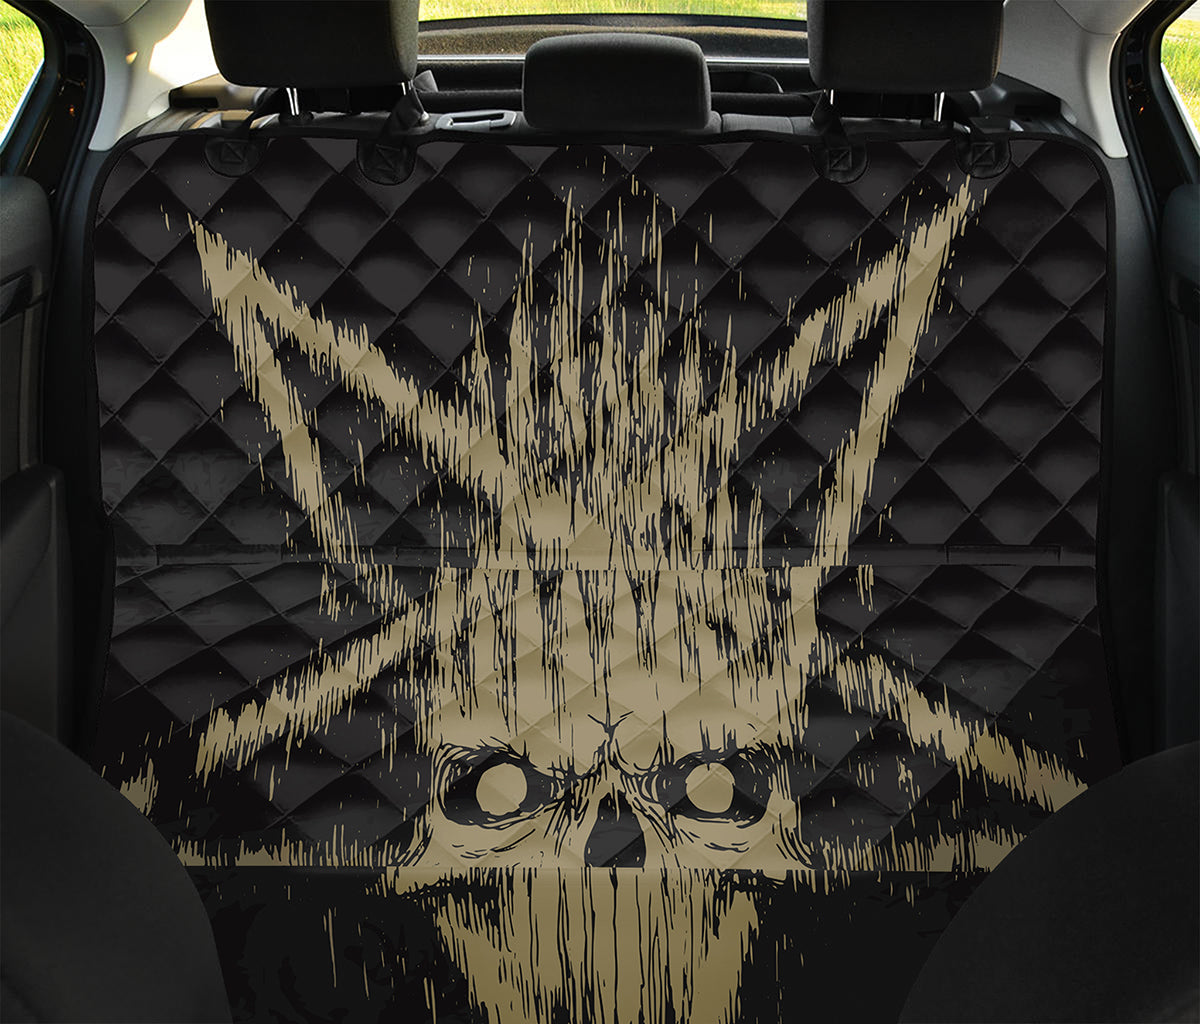 Satanic Pentagram Skull Print Pet Car Back Seat Cover